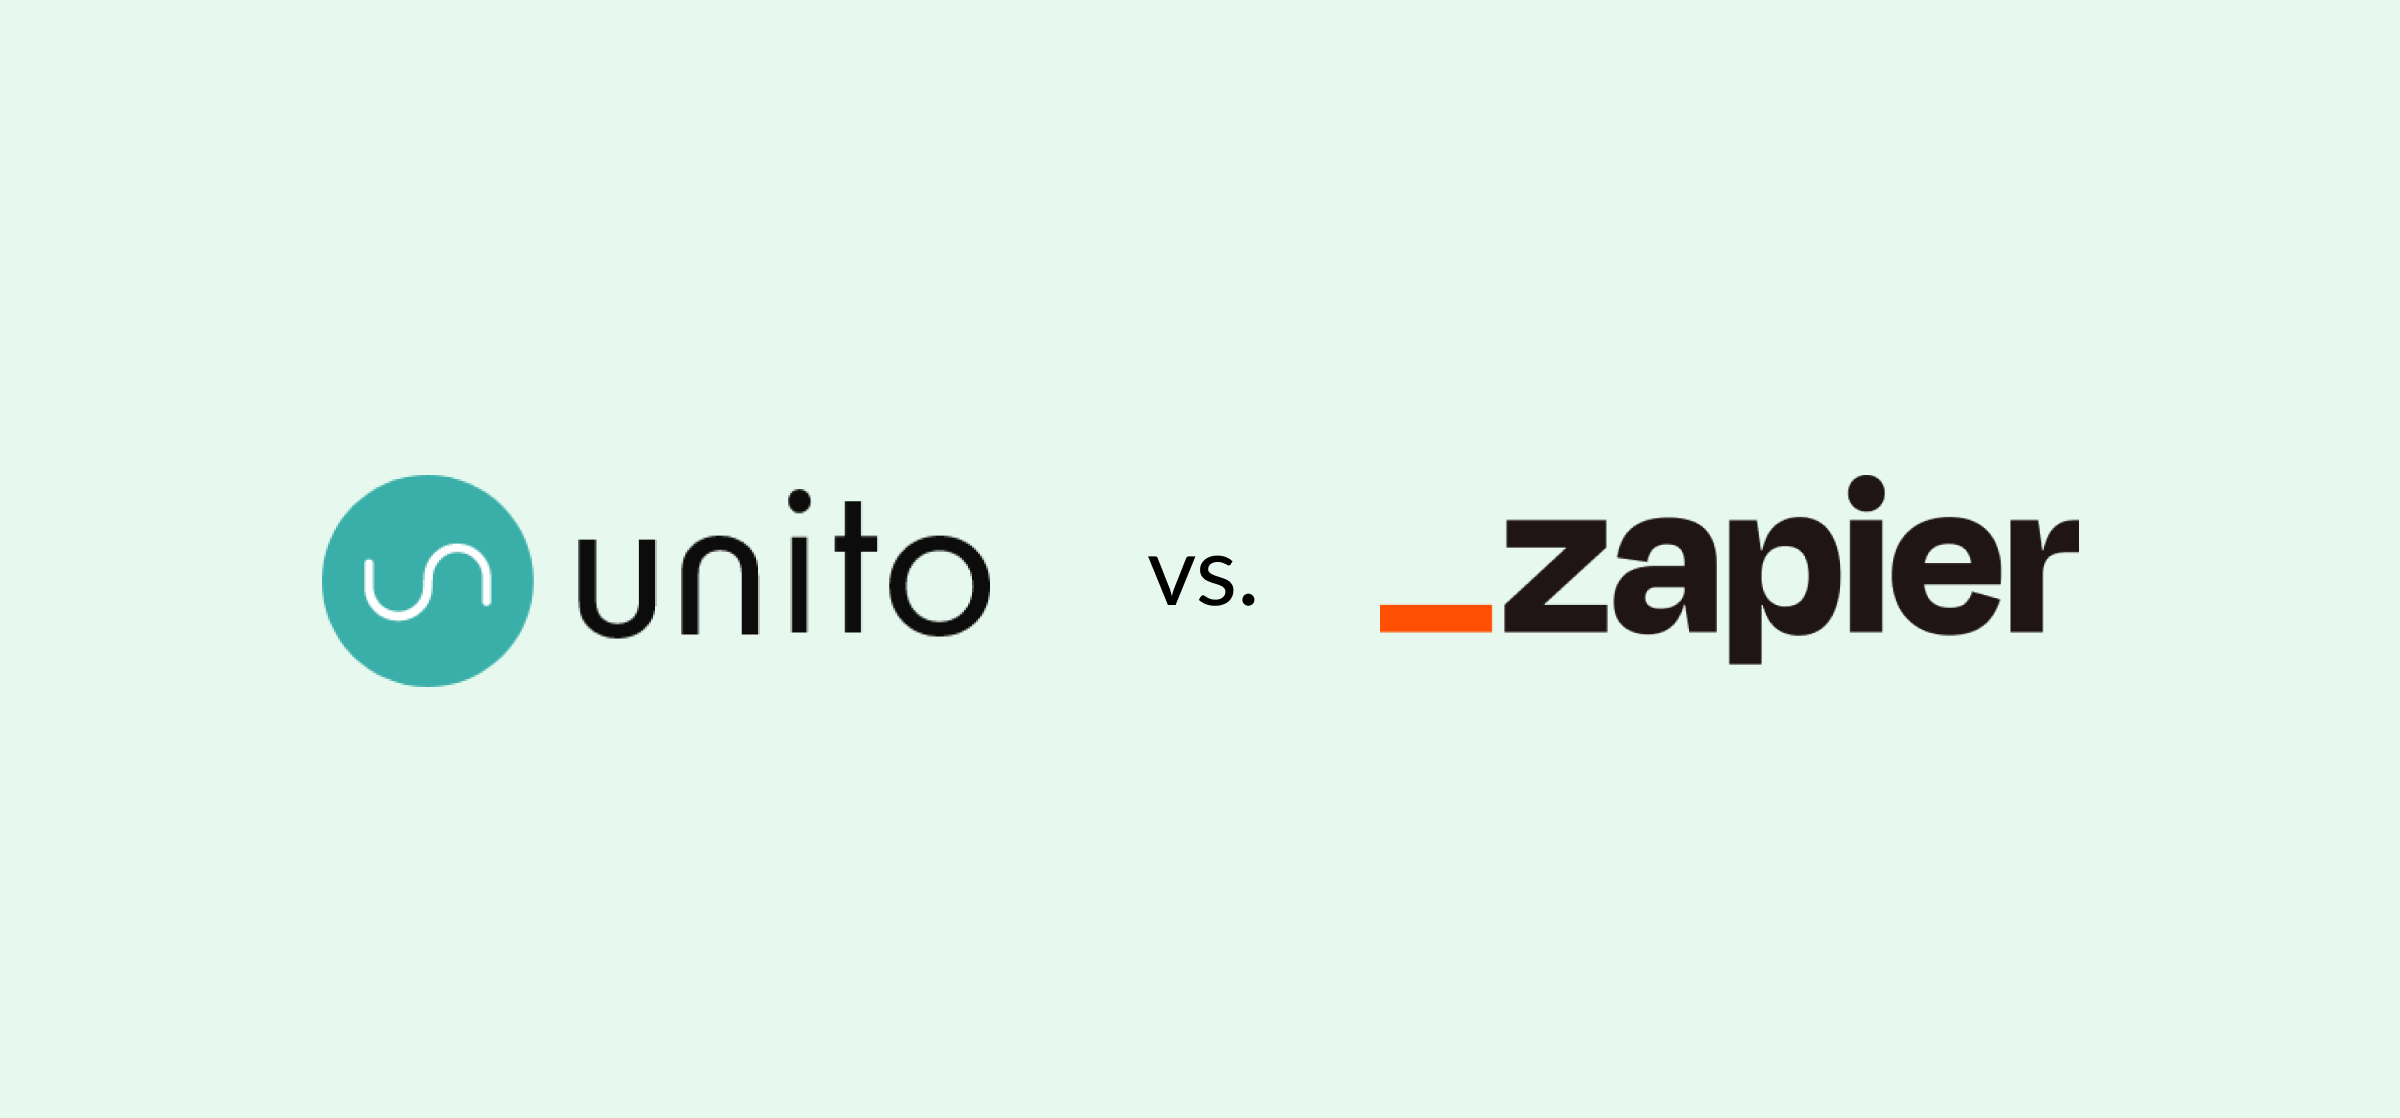 Logos for Unito and Zapier, representing a guide comparing Zapier vs. Unito.